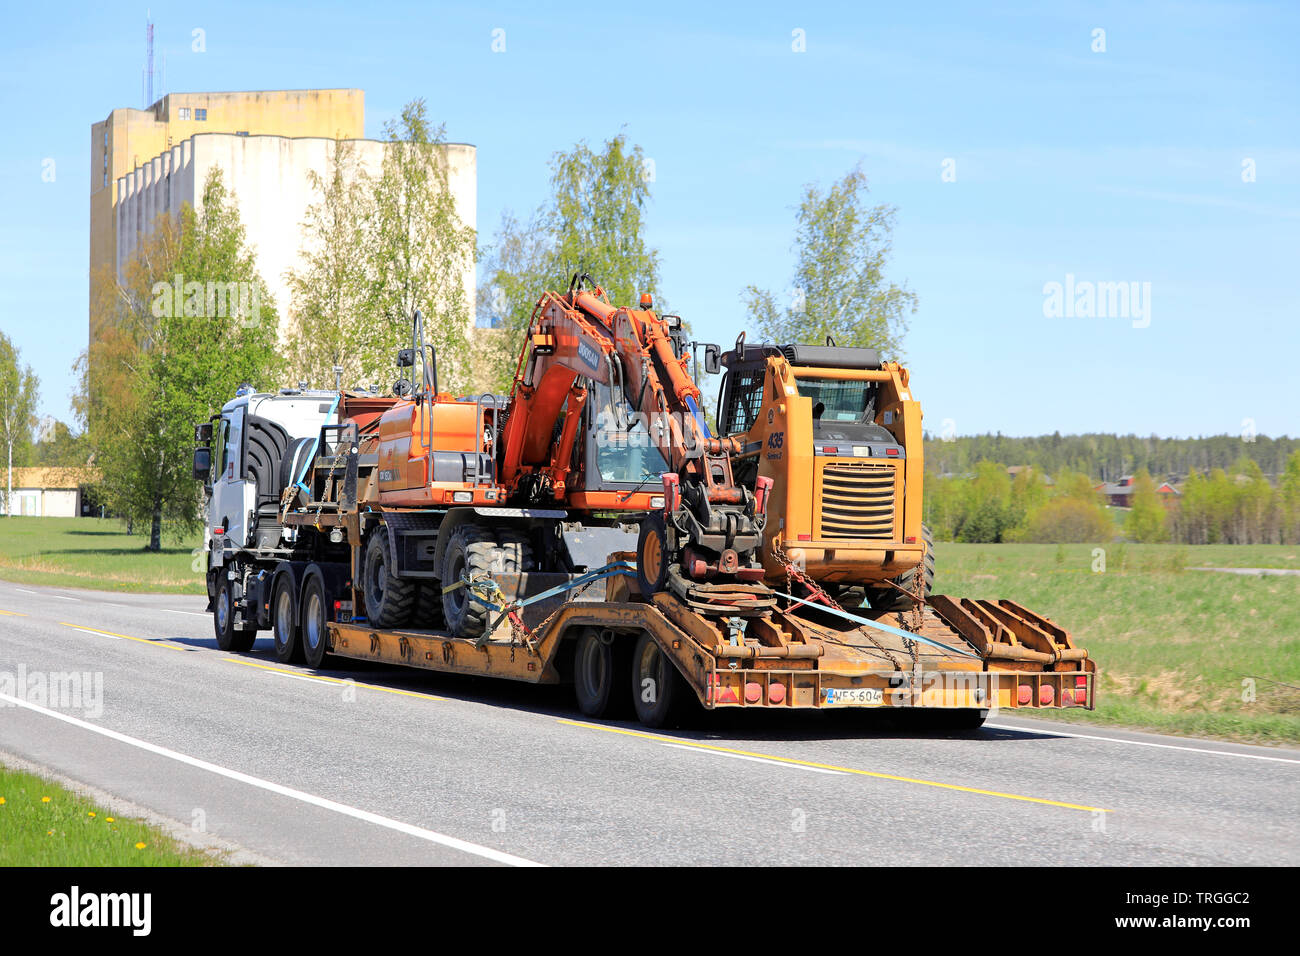 Salo, Finnland - 17. Mai 2019: Renault Trucks semi schleppt eine große Last von Baumaschinen auf Anhänger entlang der Straße an einem Tag im Frühling, Ansicht von hinten. Stockfoto